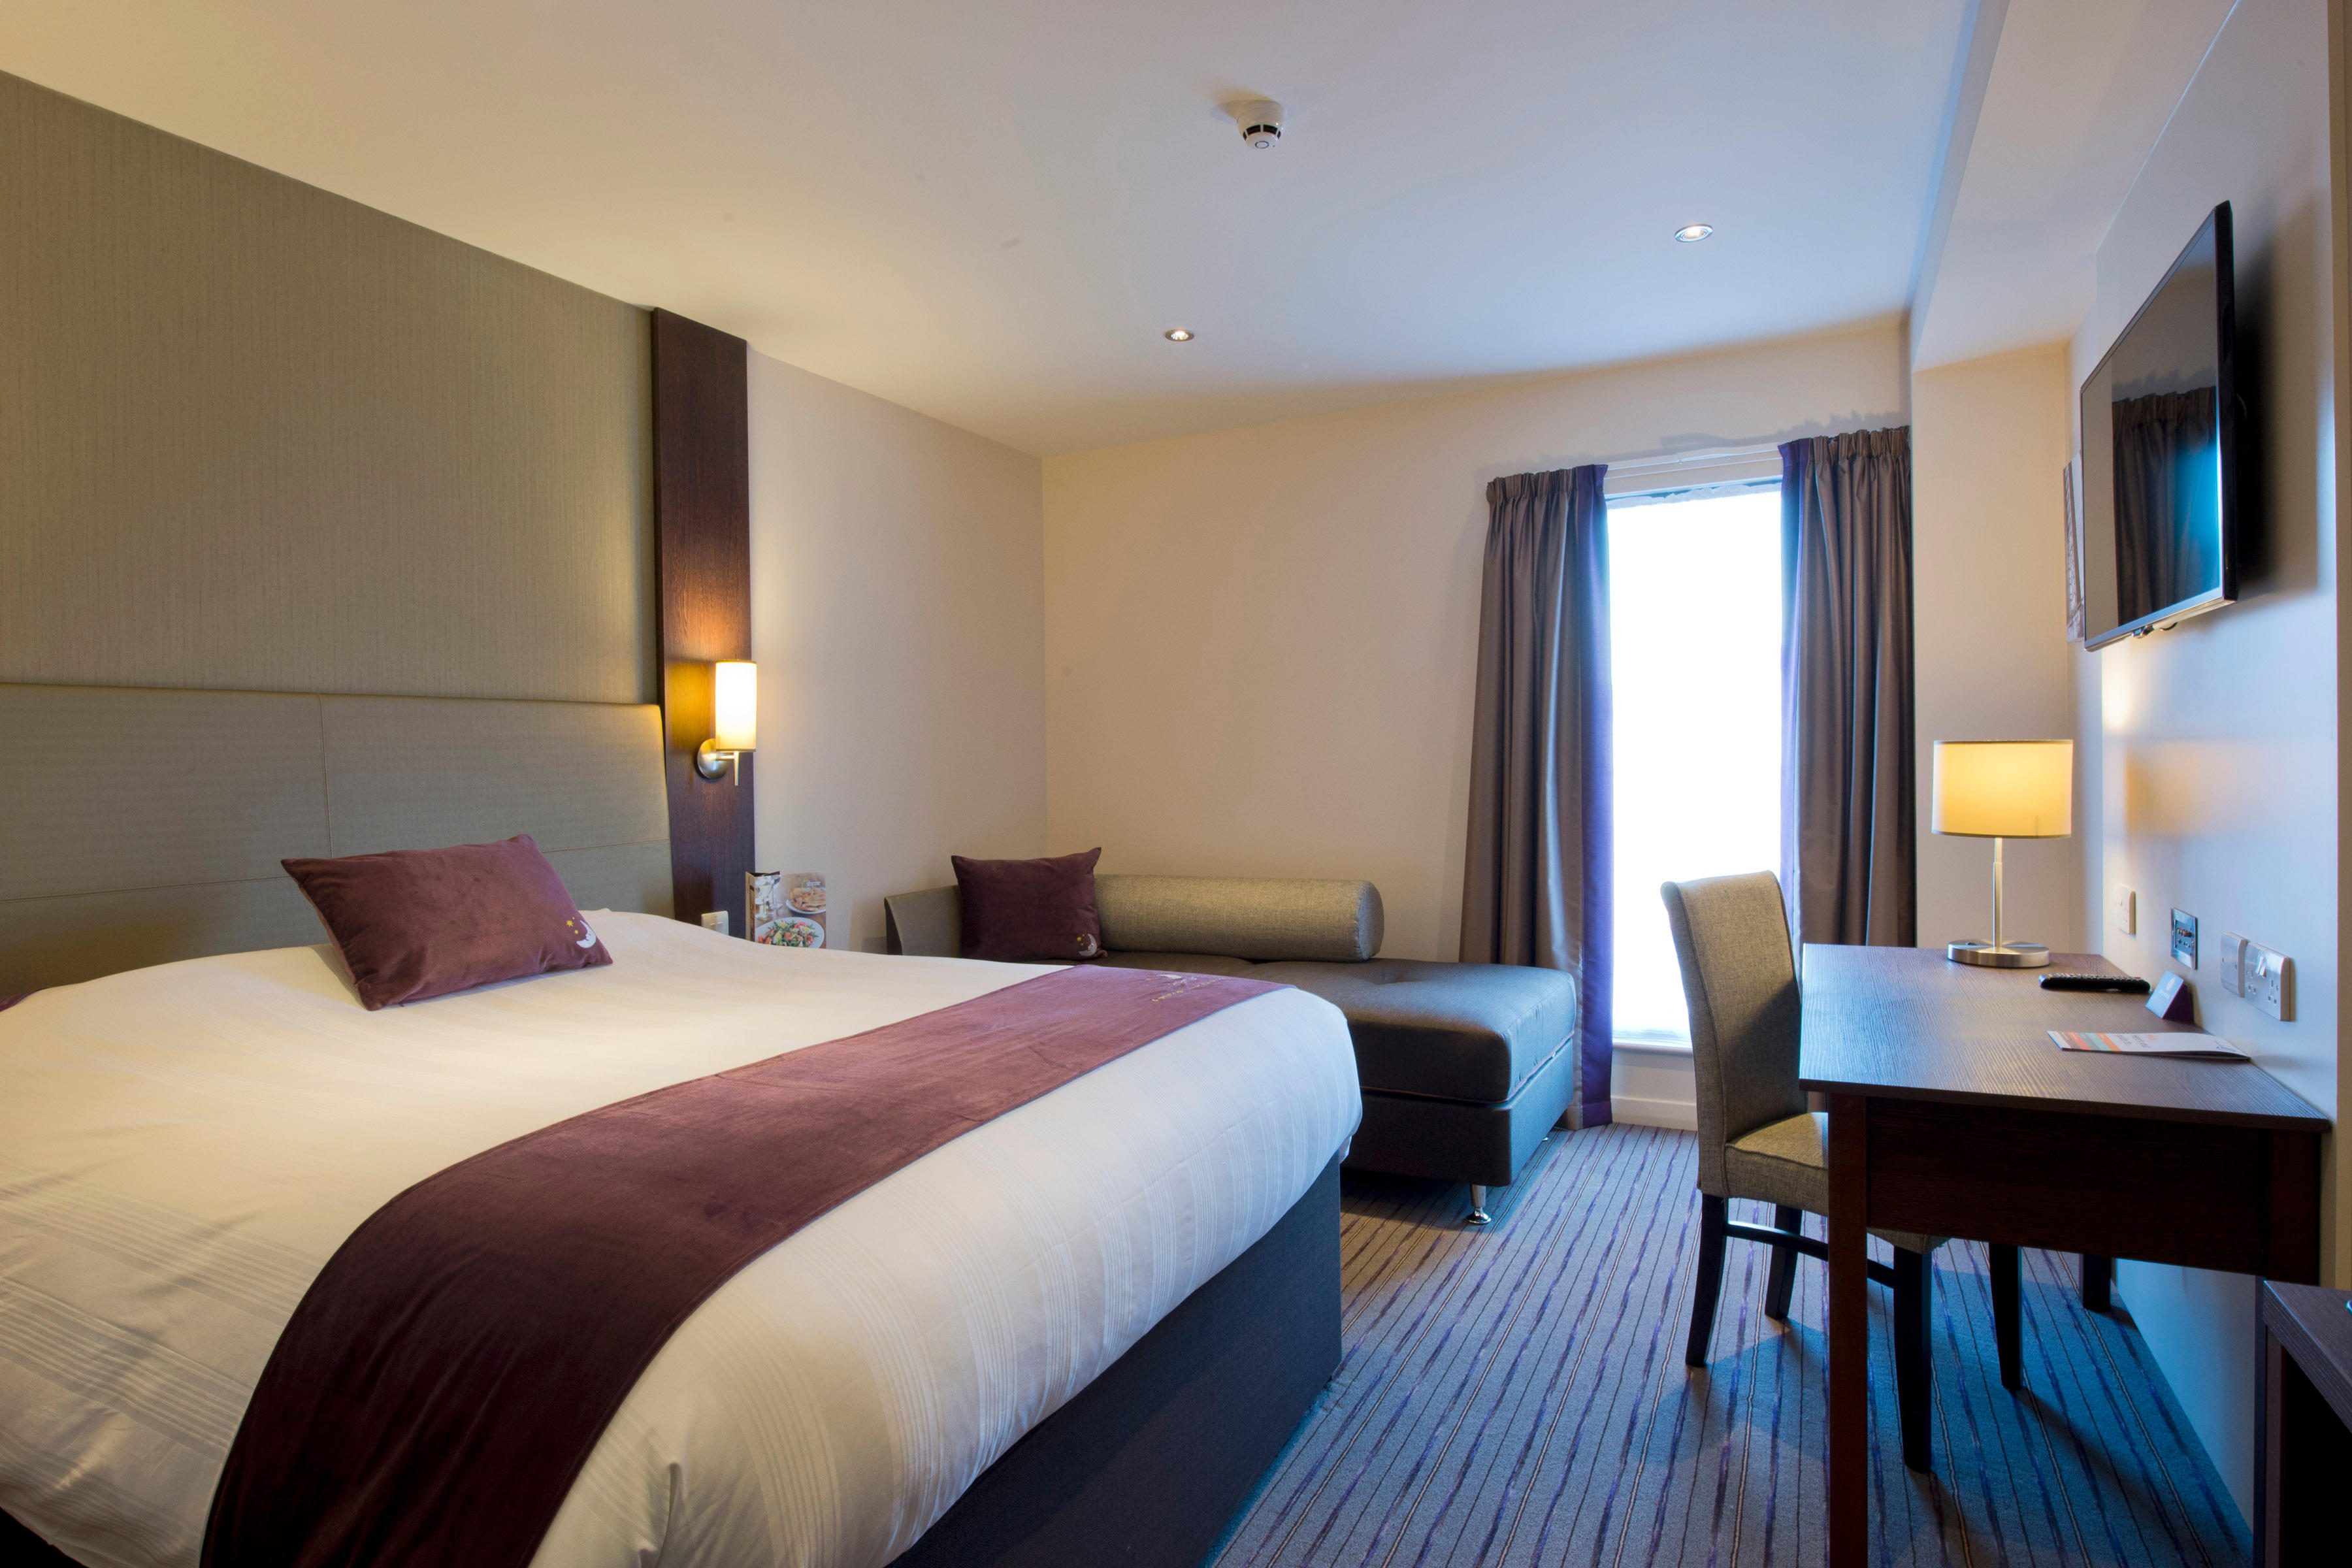 Premier Inn bedroom Premier Inn Exeter City Centre hotel Exeter 03333 219068